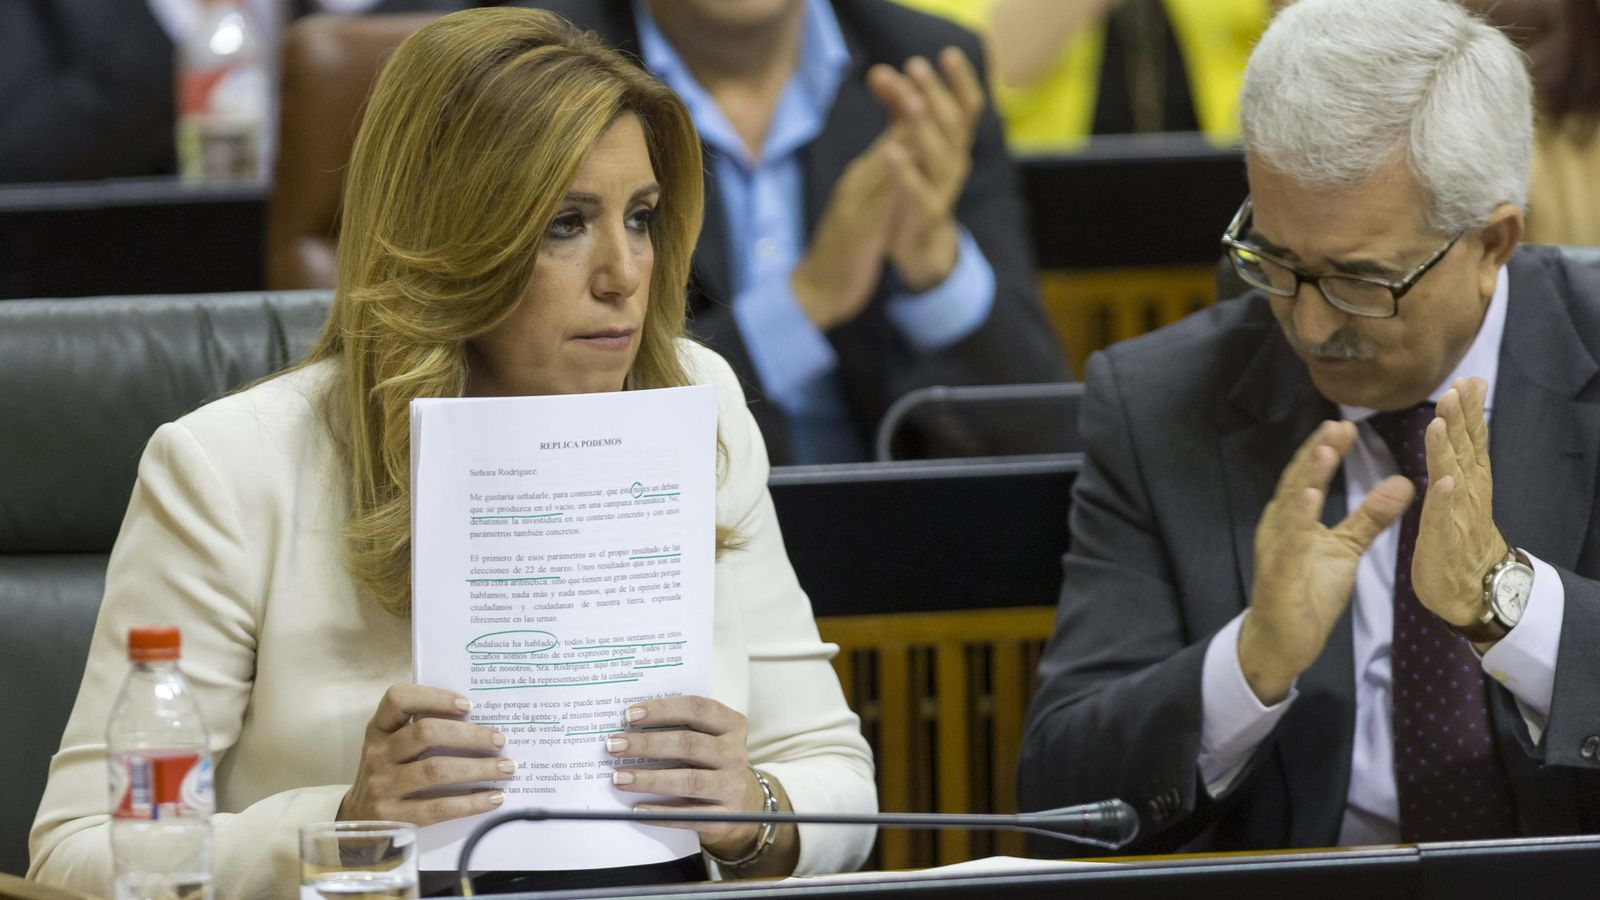 Foto: La presidenta de la Junta de Andalucía en funciones, Susana Díaz. (EFE)